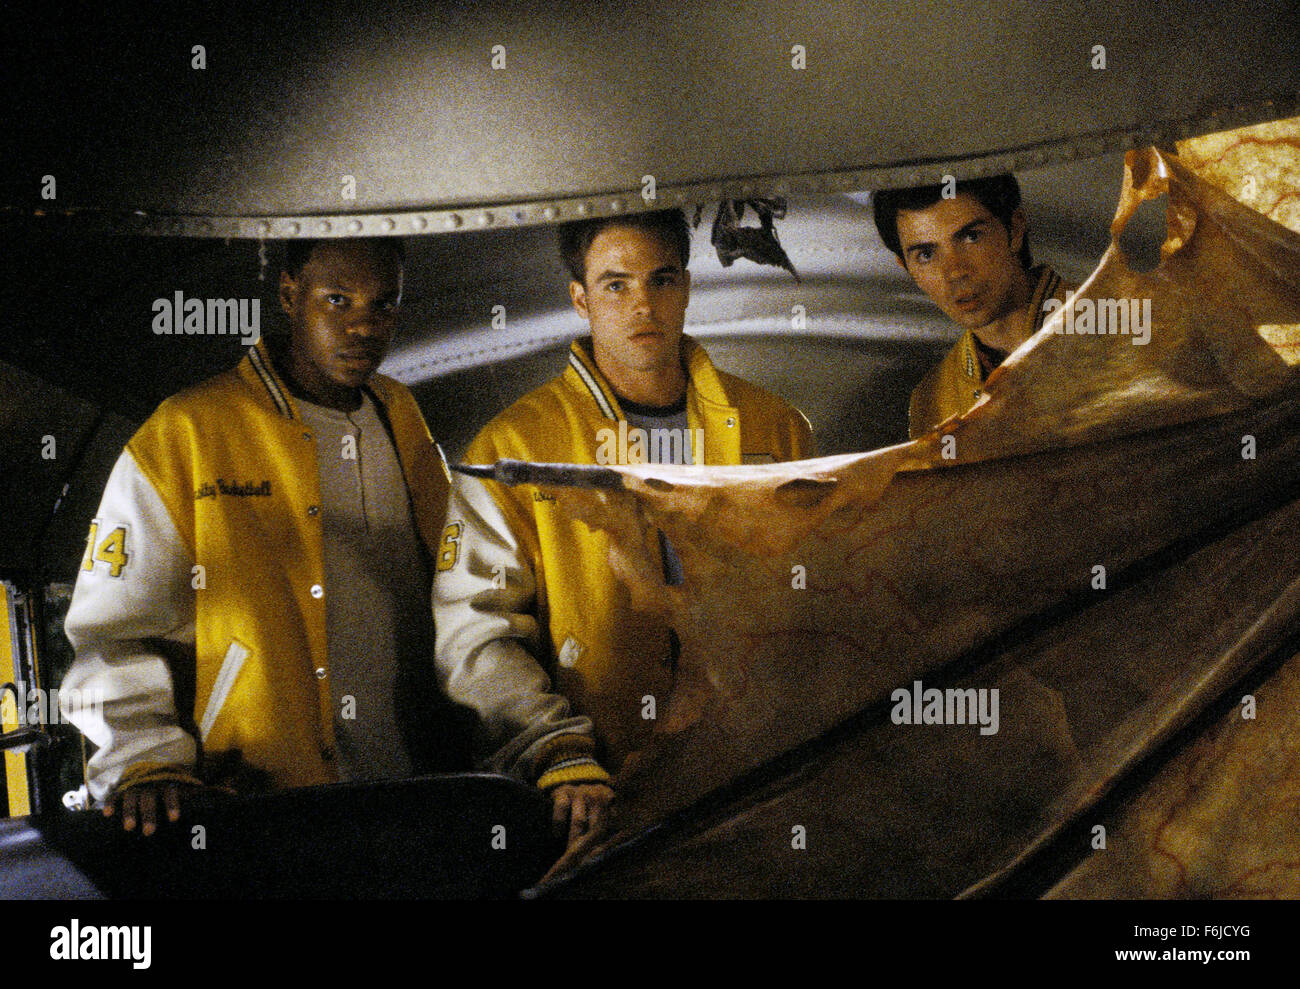 Juin 04, 2003 ; Hollywood, CA, USA ; GARIKAYI MUTAMBIRWA, Al Santos et Josh HAMMOND star comme Deaundre 'Double D' Davis, Dante Belasco et Jake Spencer dans le film d'horreur passionnant "Jeepers Creepers 2" réalisé par Victor Salva. Banque D'Images